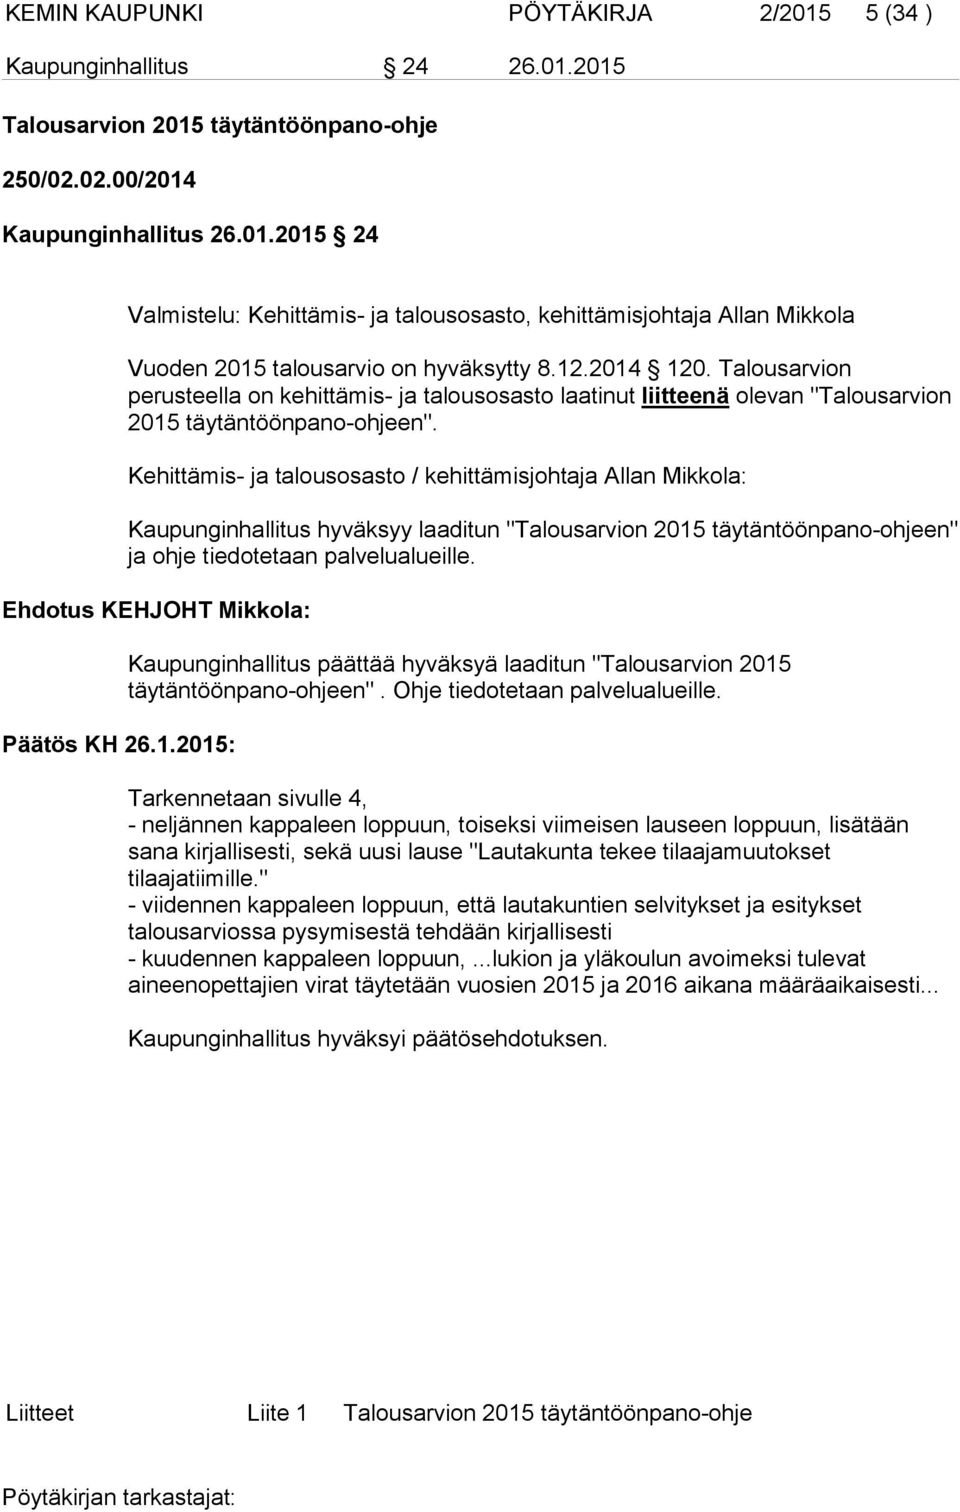 Kehittämis- ja talousosasto / kehittämisjohtaja Allan Mikkola: Kaupunginhallitus hyväksyy laaditun "Talousarvion 2015 täytäntöönpano-ohjeen" ja ohje tiedotetaan palvelualueille.